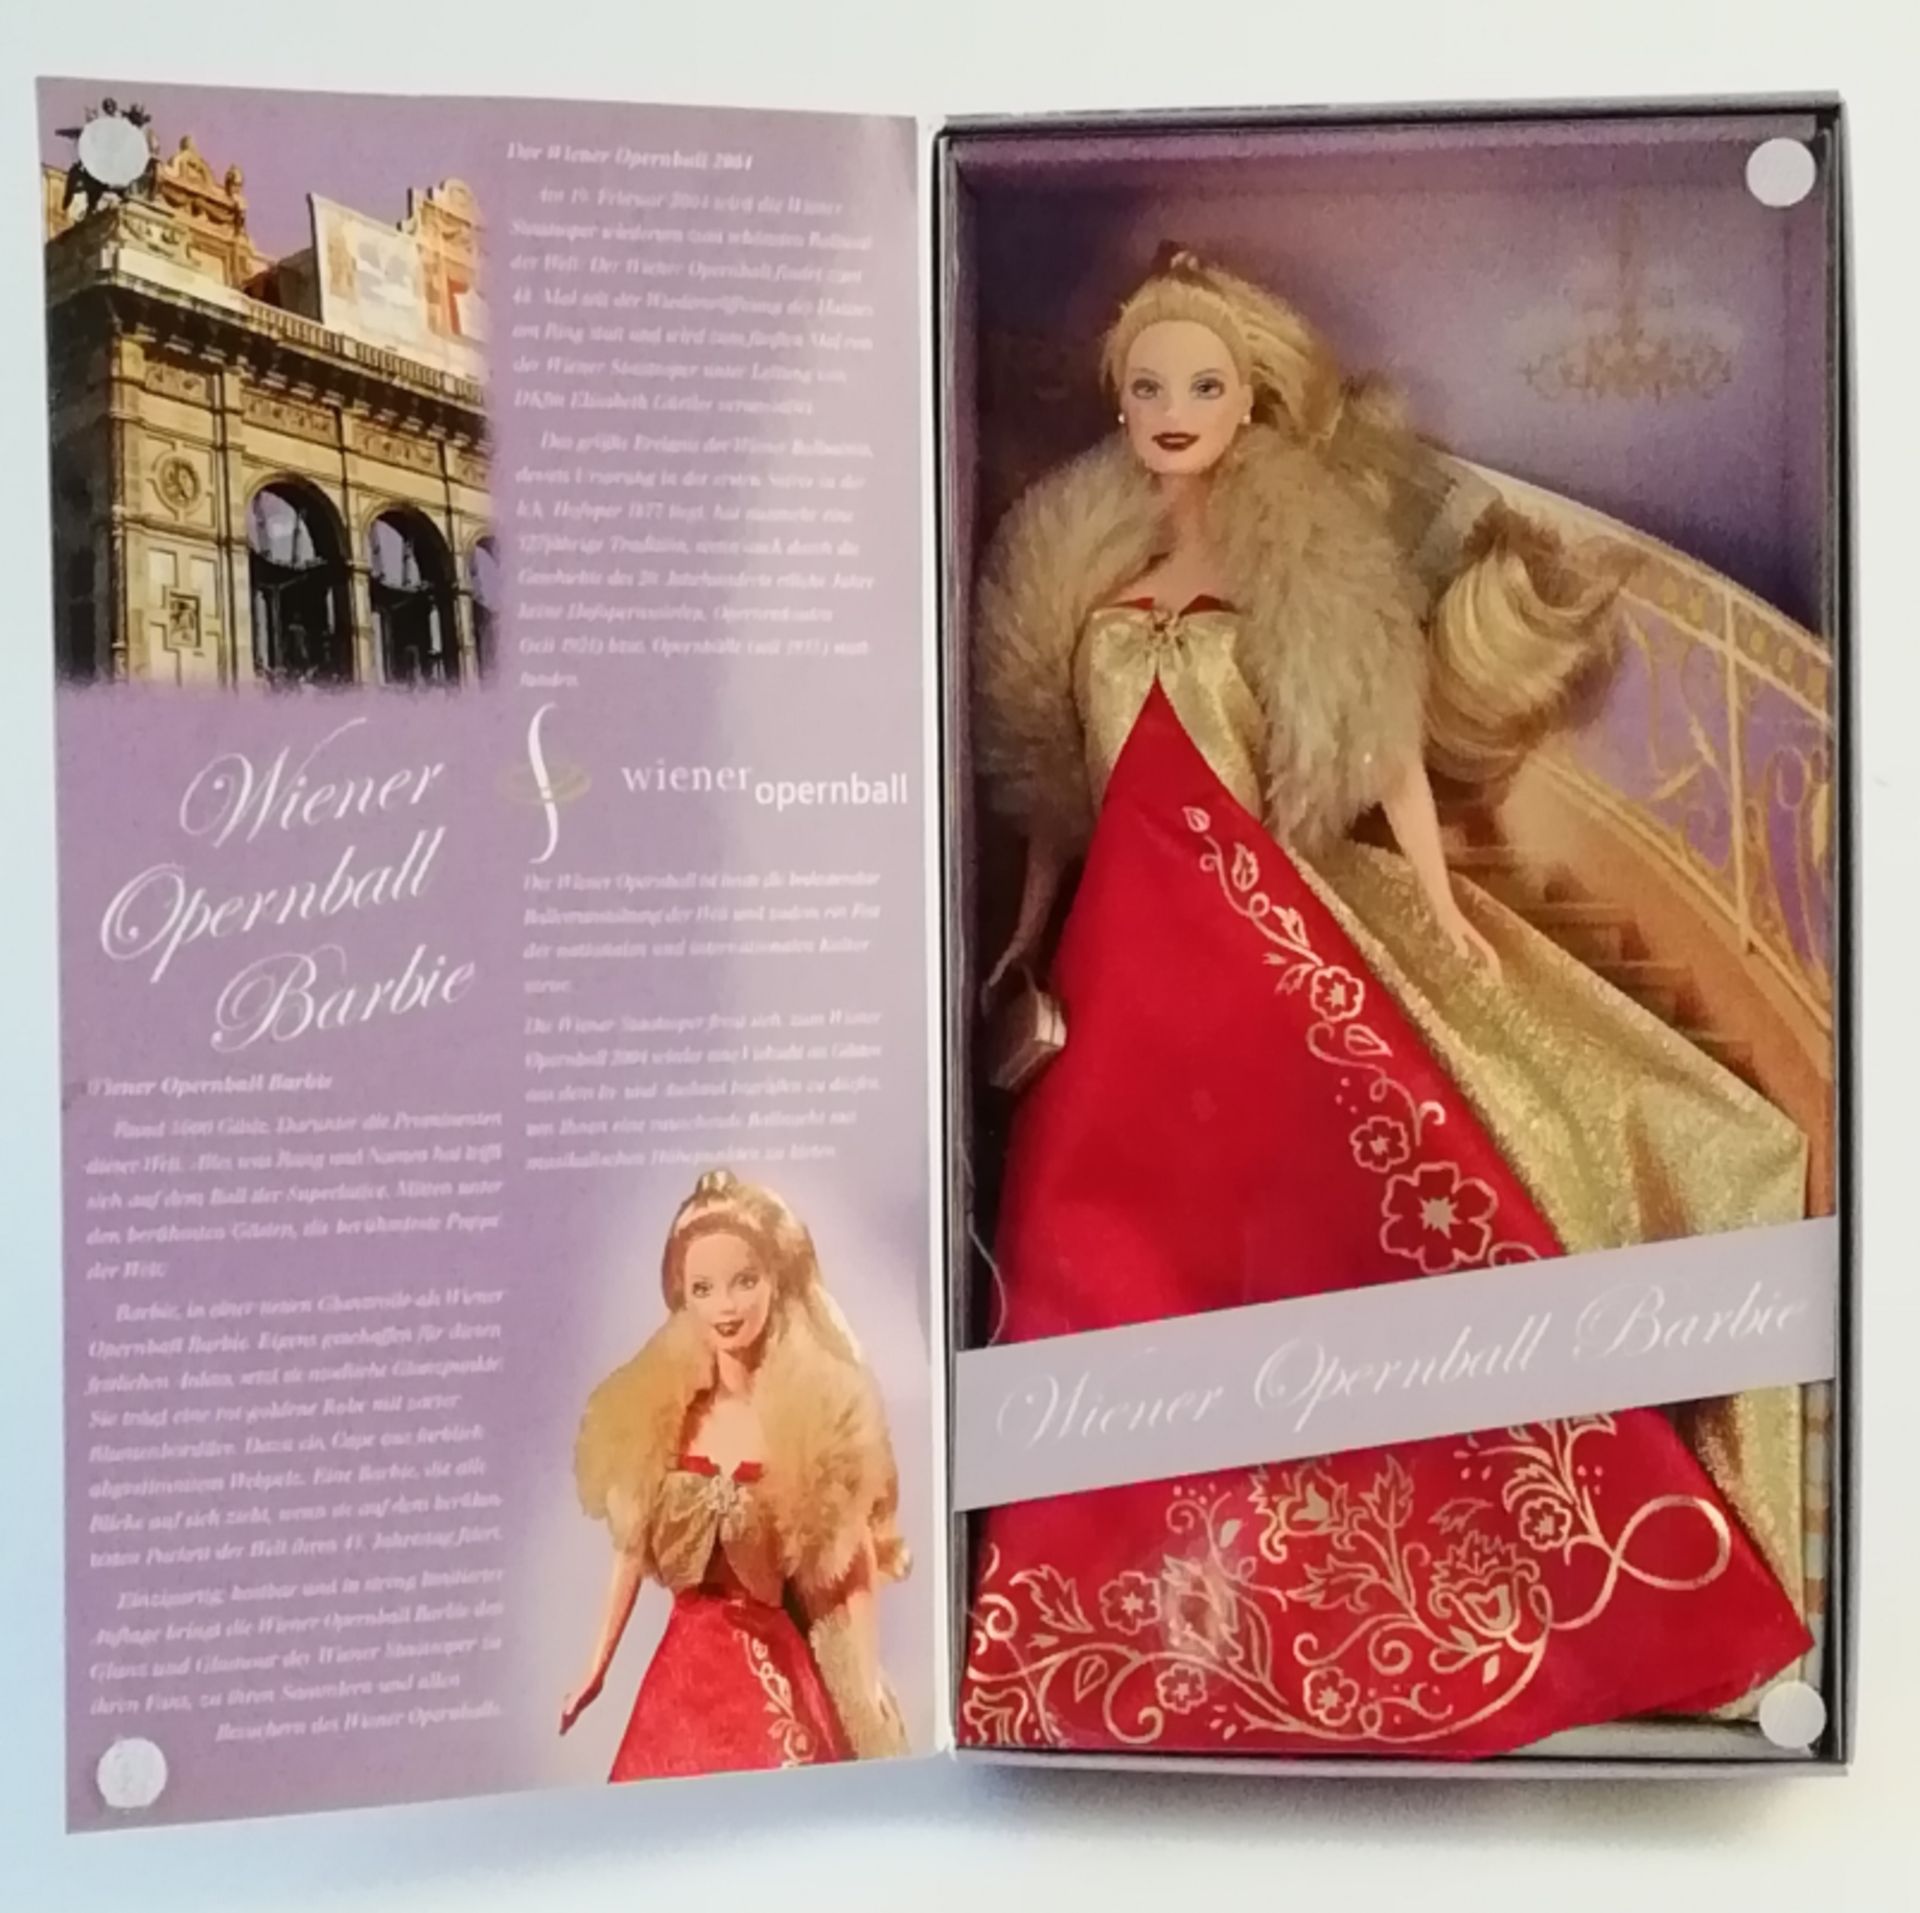 Wiener Opernball Barbie - Image 2 of 2